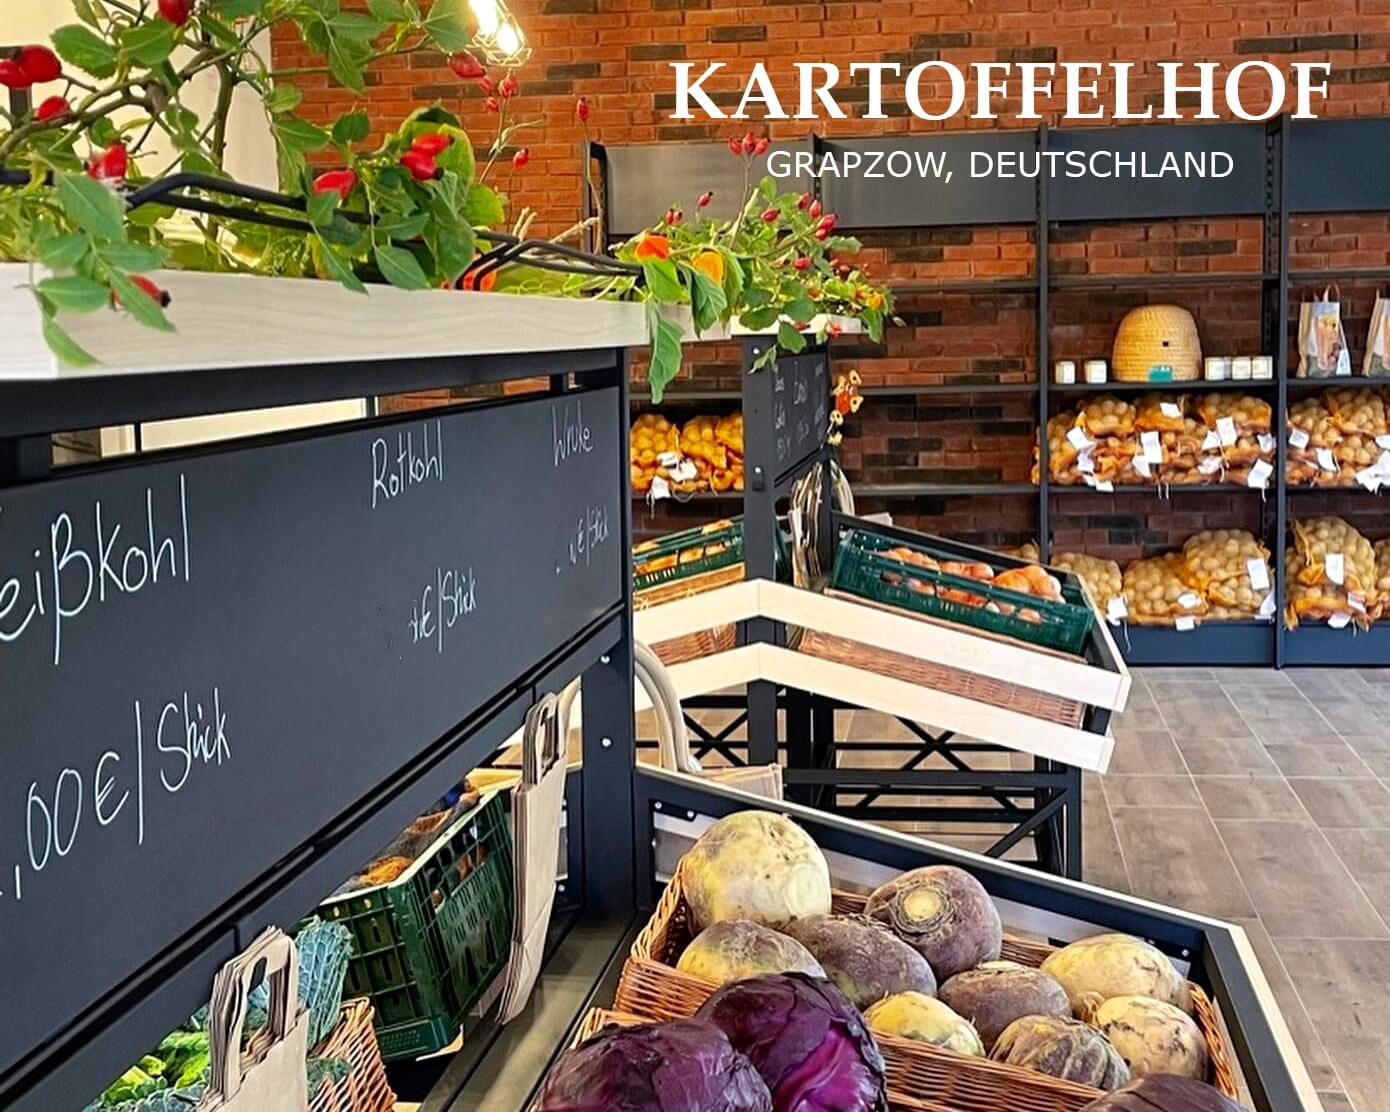 Ladeneinrichtung bei Kartoffelhof Grapzow, DE